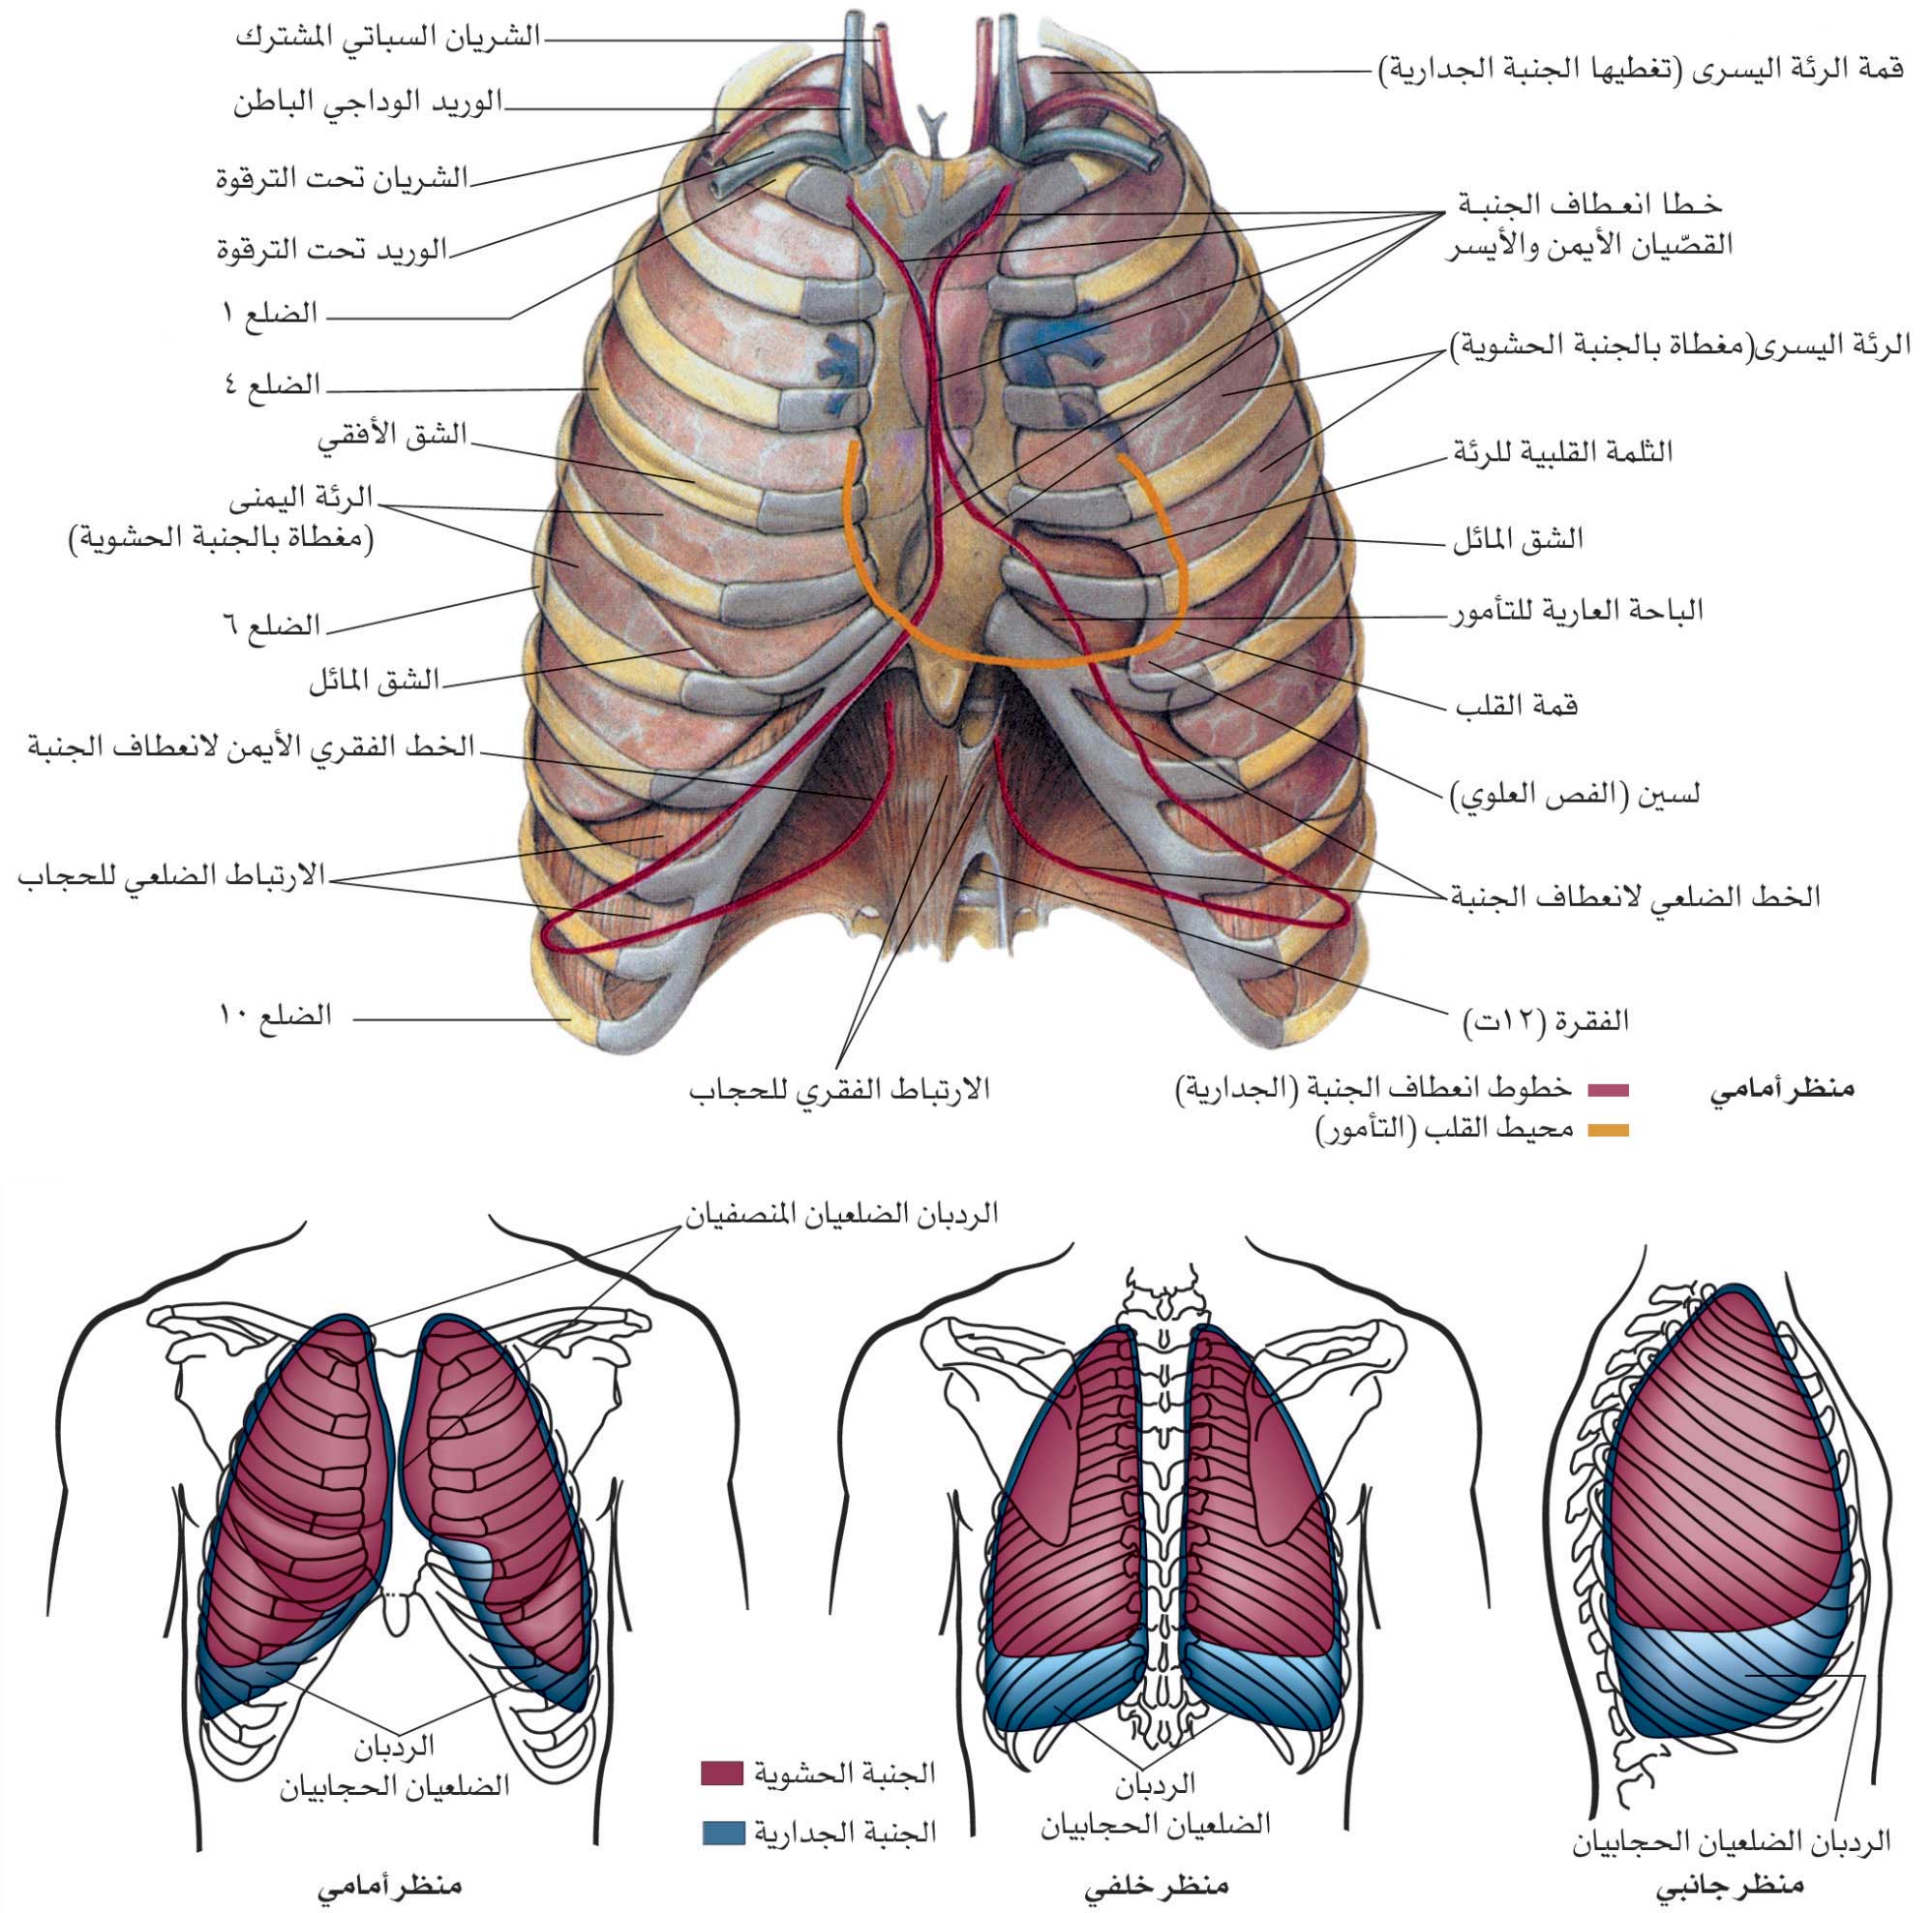 الموسوعة العربية | لمحة تشريحية وفيزيولوجية عن جهاز التنفس